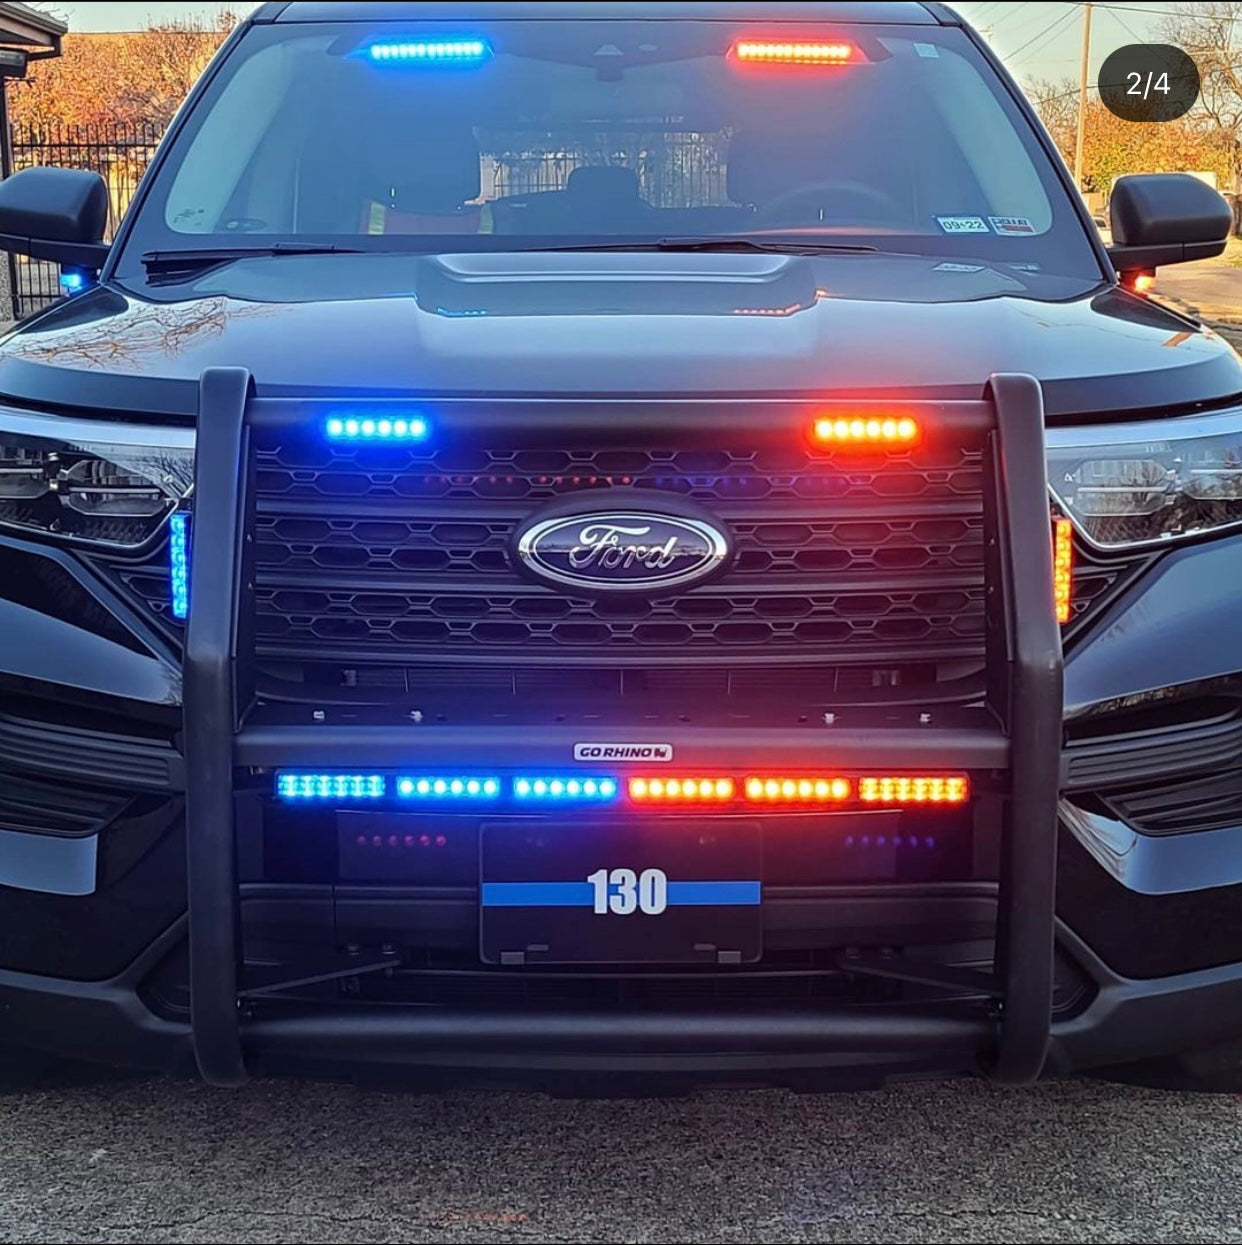 emergency lighting on police vehicle